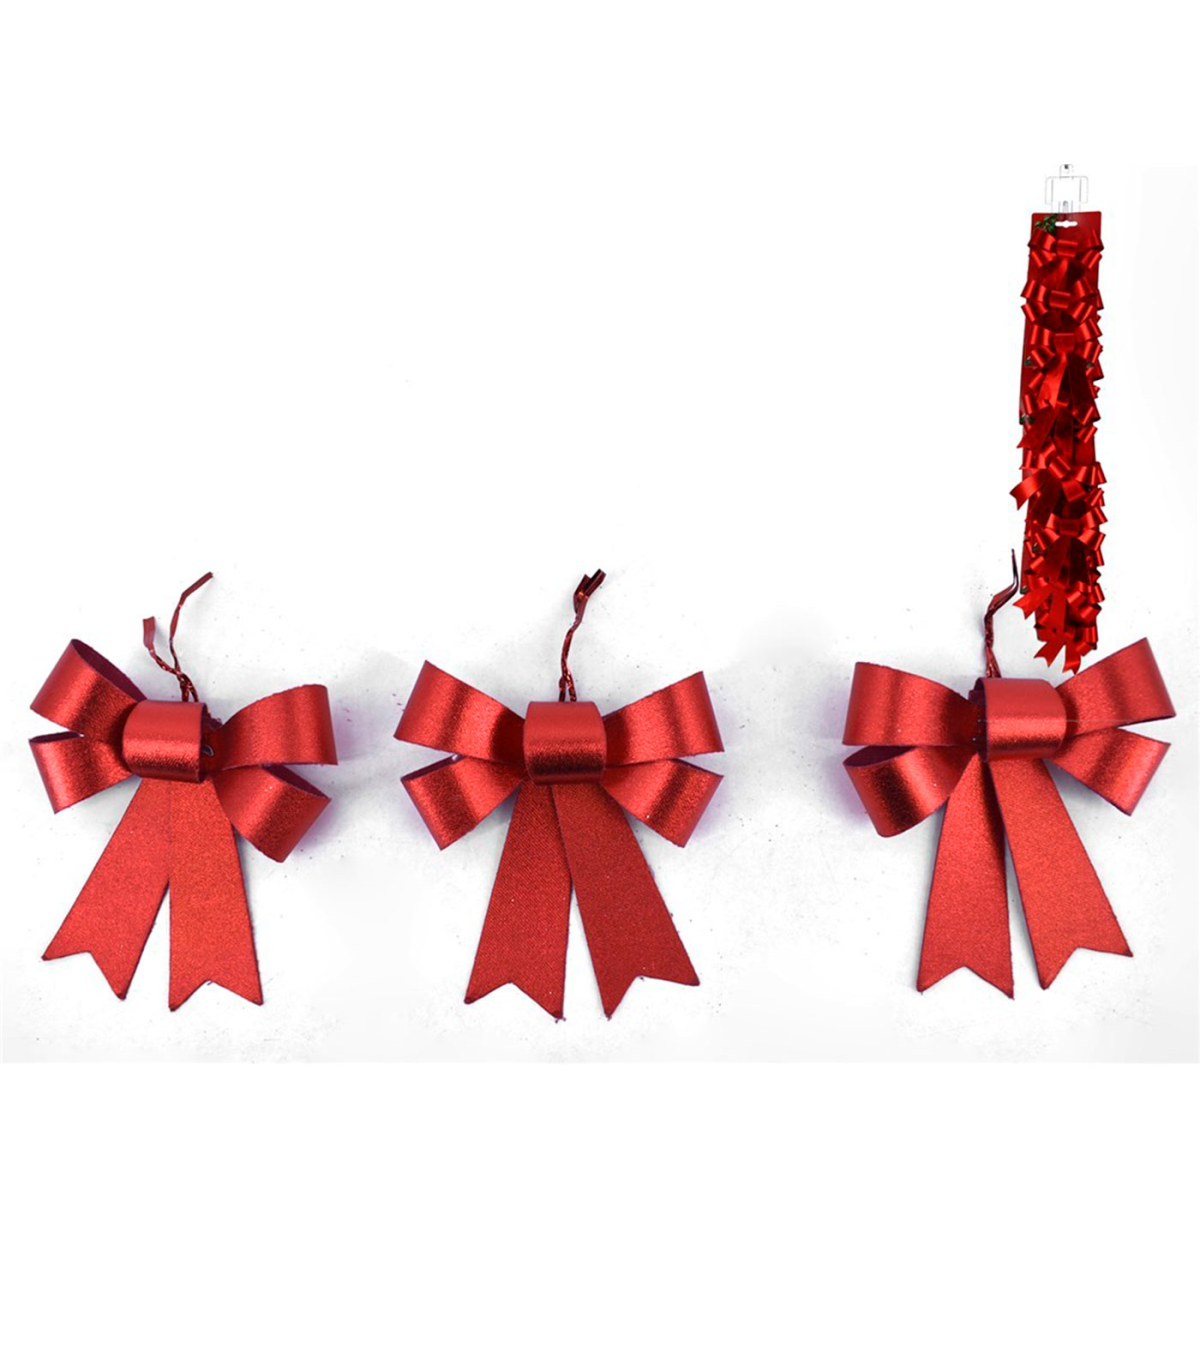 Tradineur - Cinta de navidad brillante, poliéster, decoración árbol  Navidad, envolver regalos, adornos, manualidades - 6,3 cm x